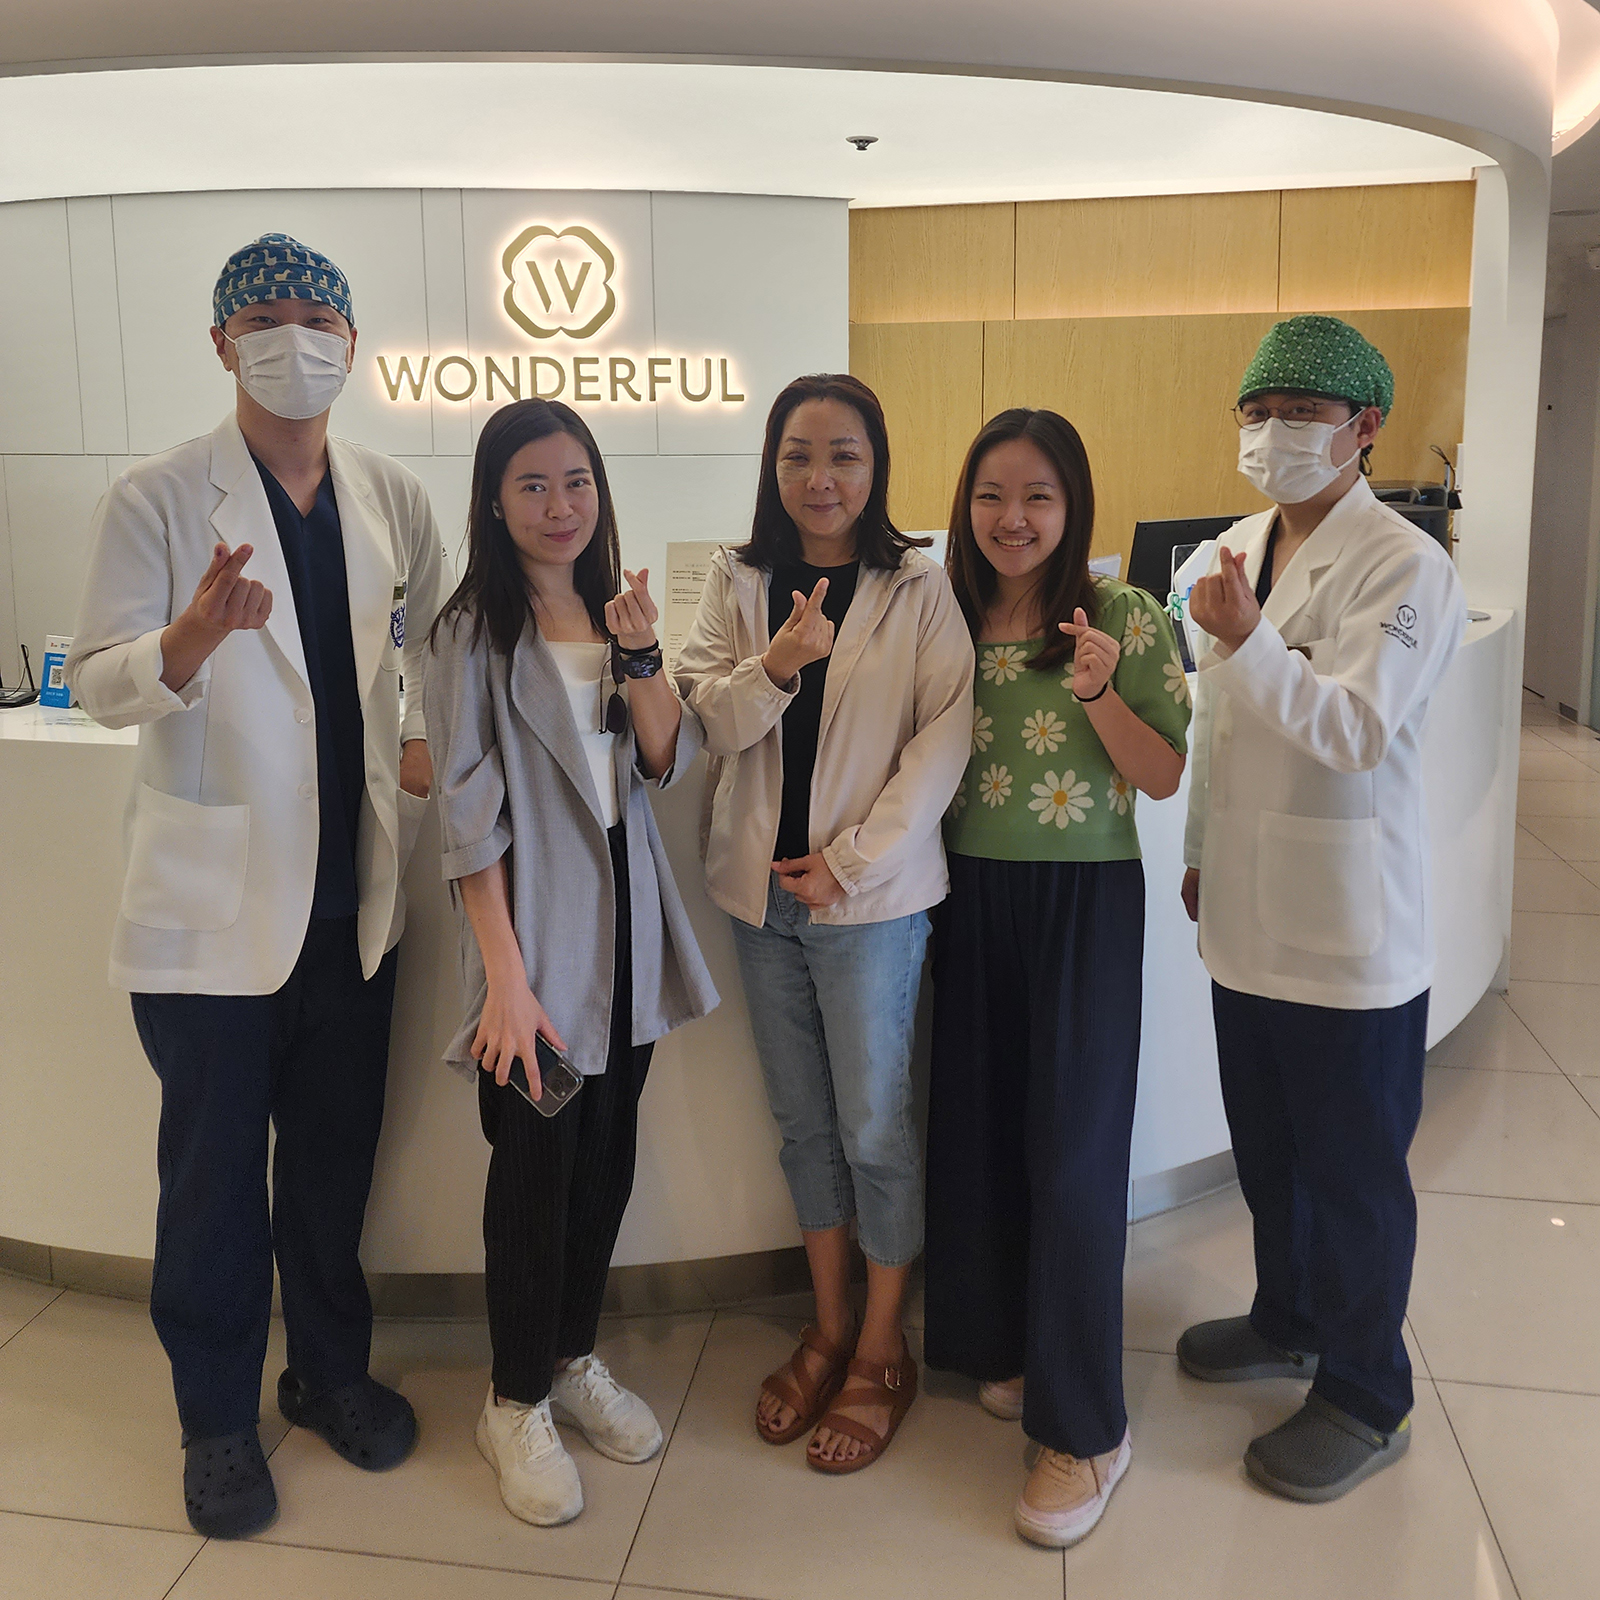 مدونة الجراحة التجميلية الرائعة: أفضل 8 علاجات غير جراحية رائجة في كوريا الجنوبية وحقن إذابة الدهون 8